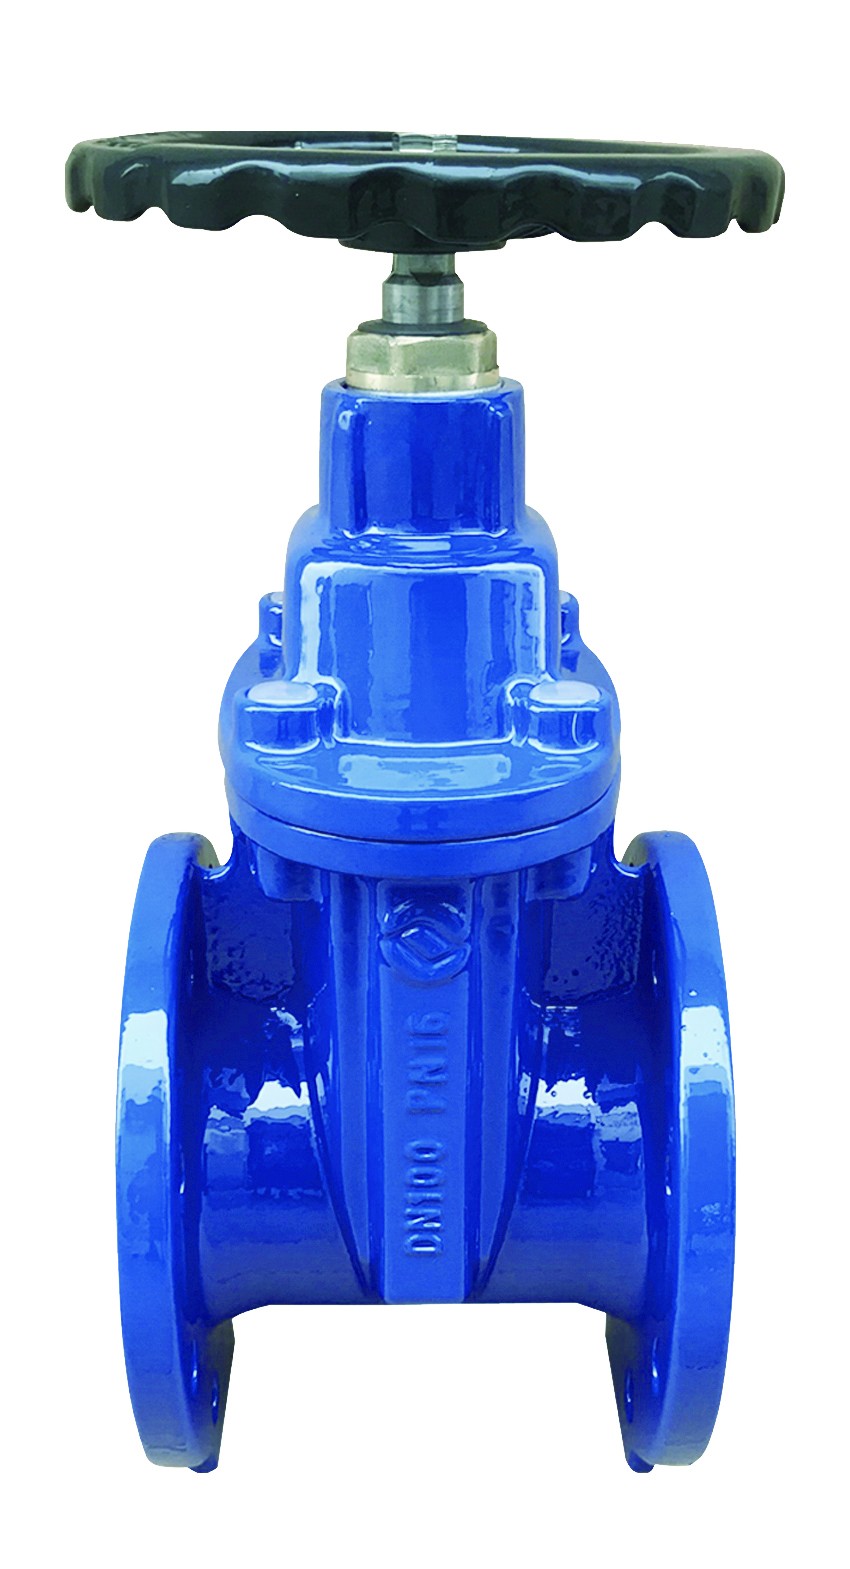 Rexroth M-SR6KE check valve